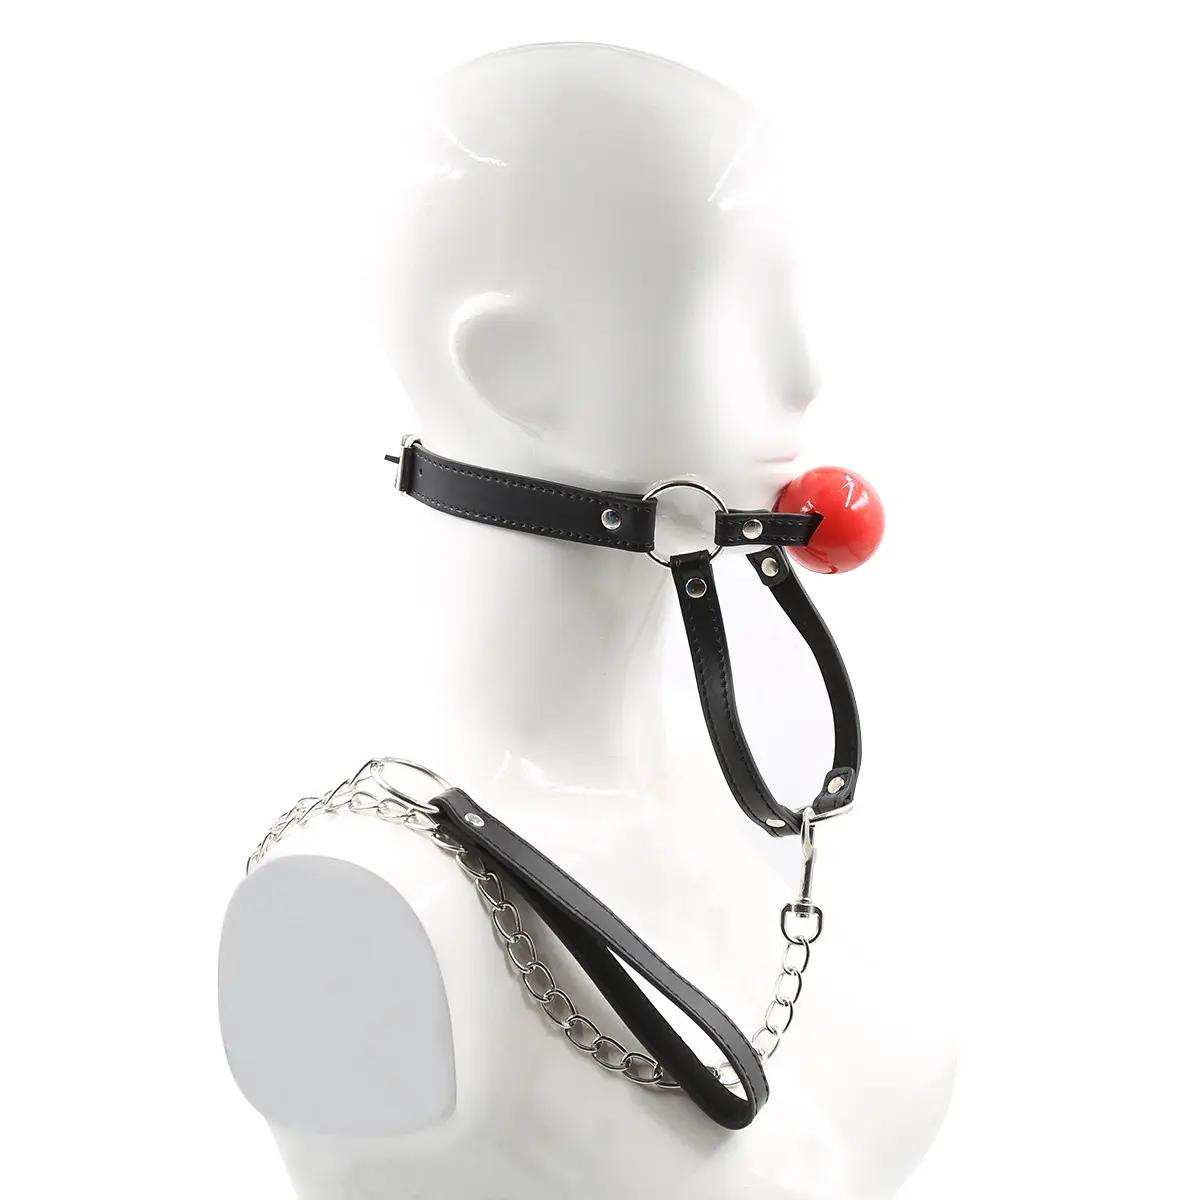 Mund Plug Bondage Adult Restraint Sexspielzeug Leder Ball knebel Für Frauen Ball Mund Open Mouth Zeug BDSM